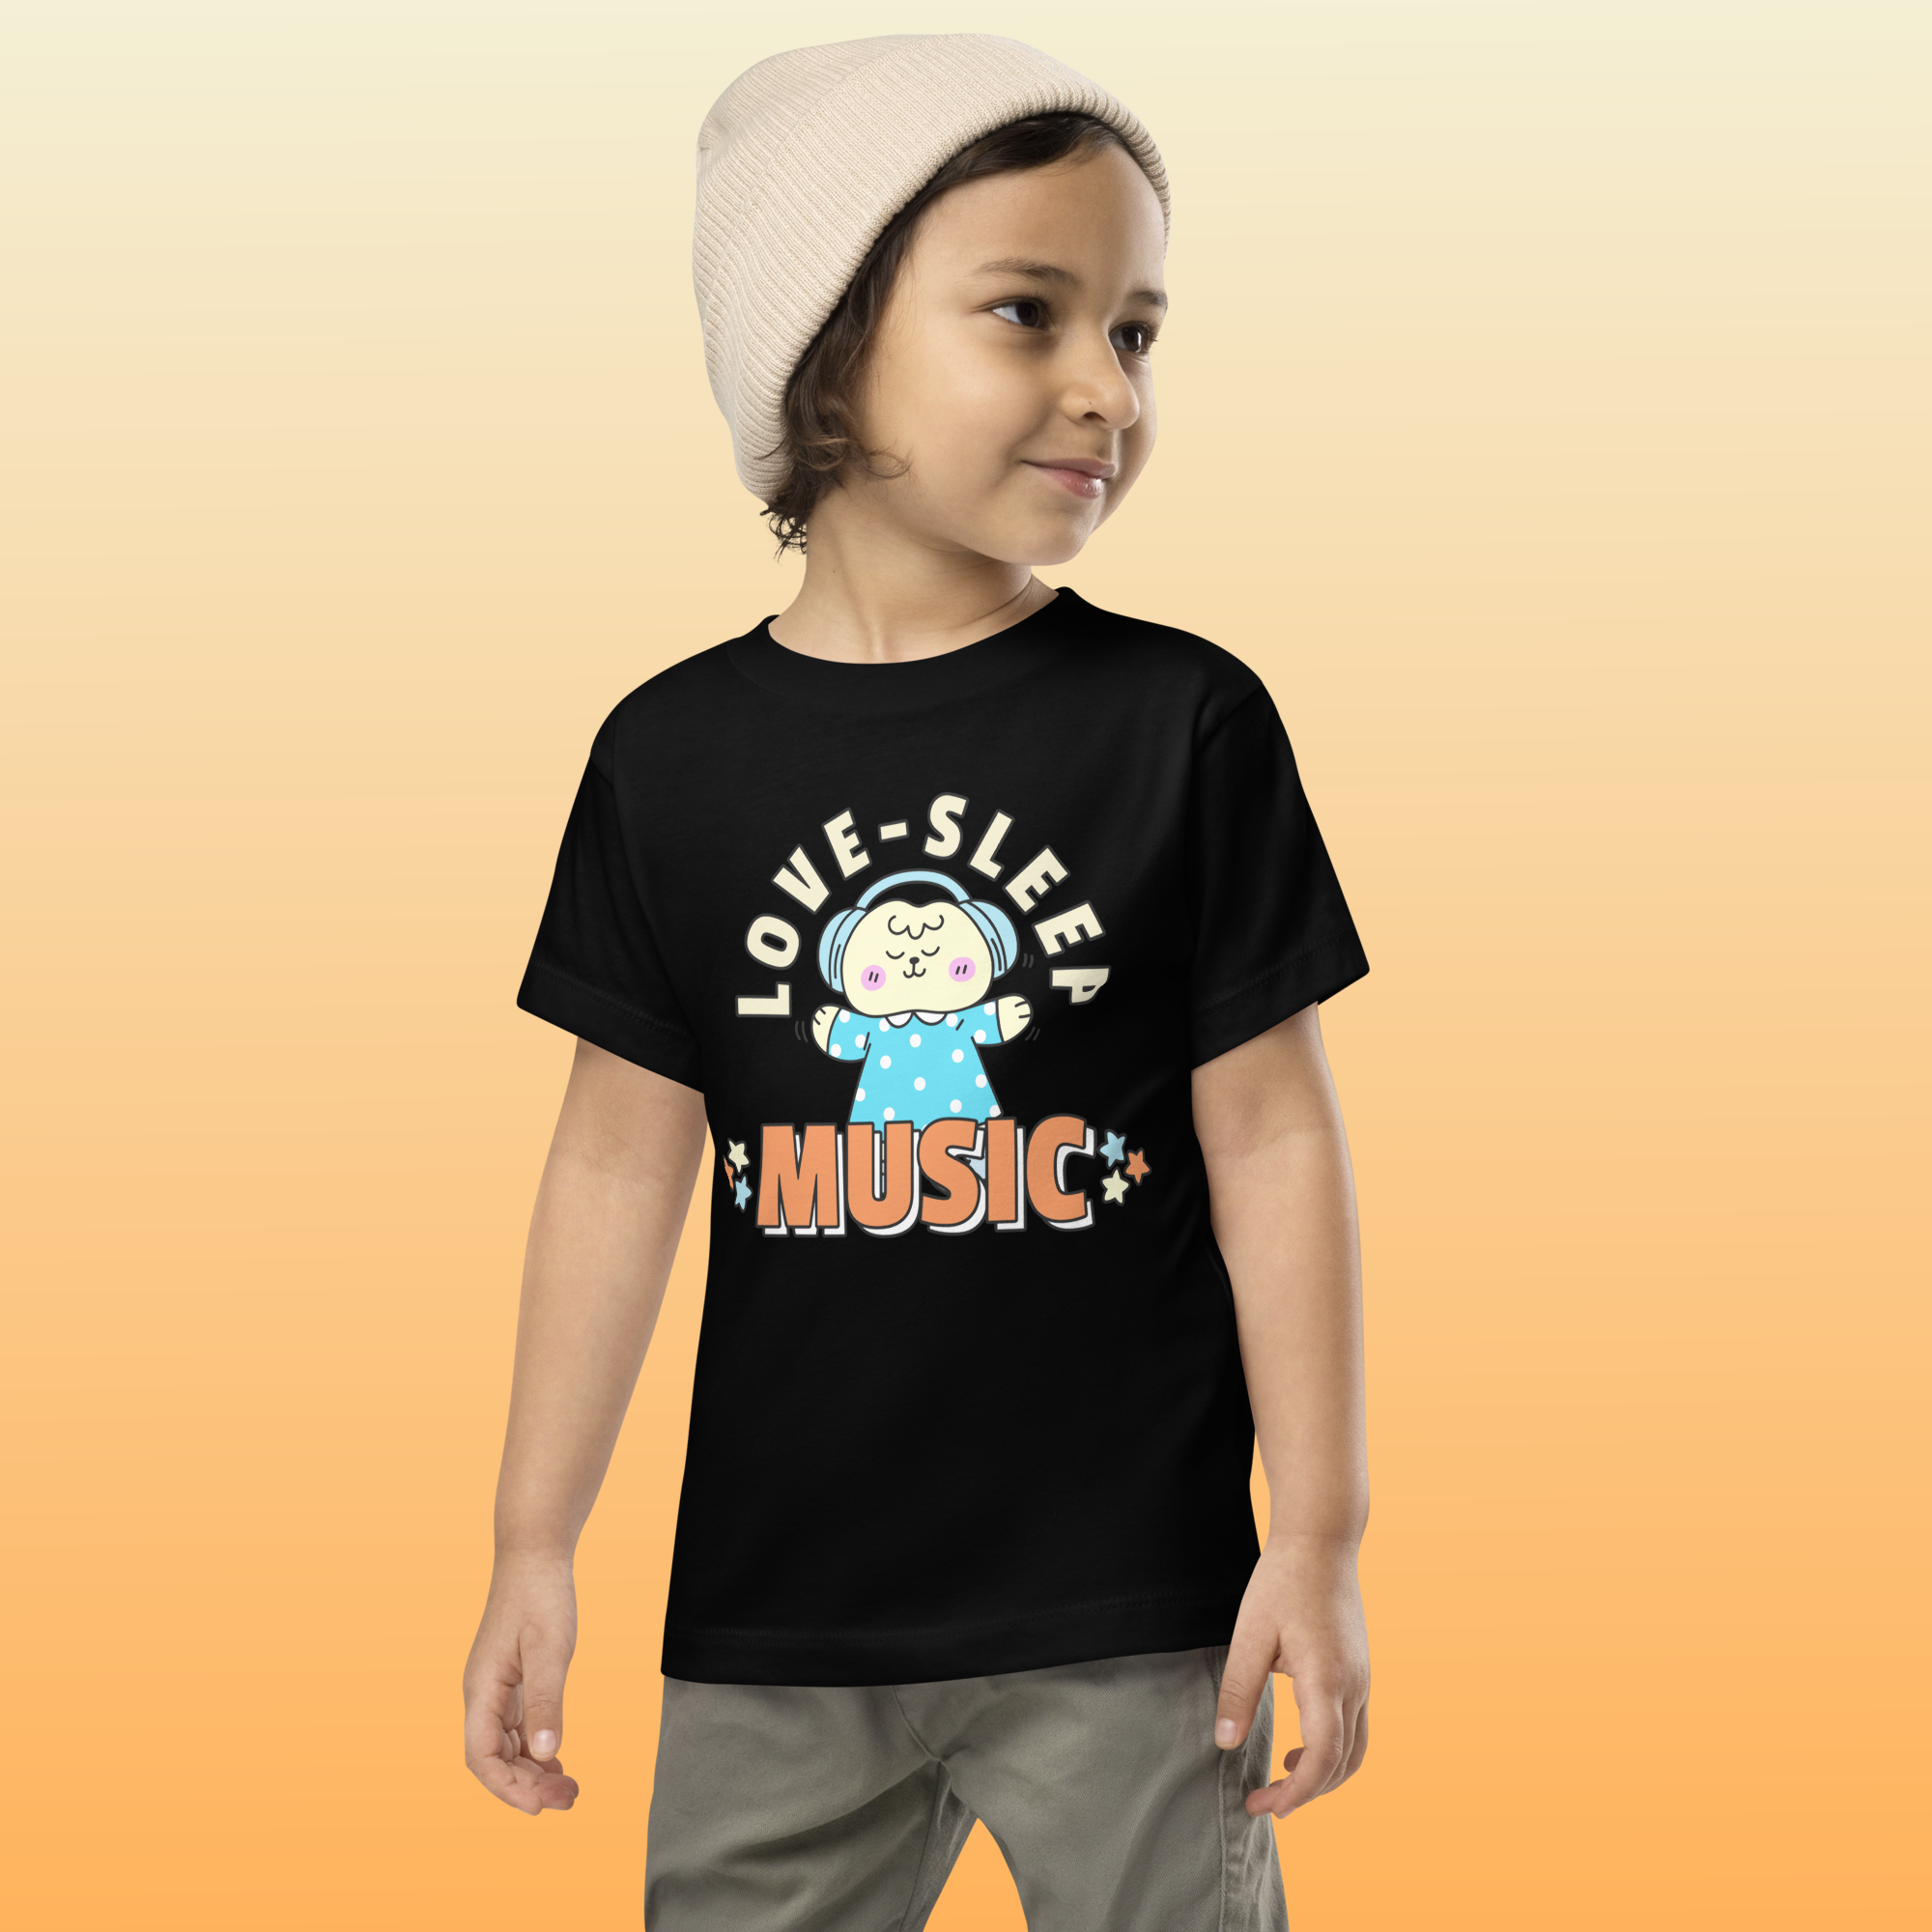 Black Toddler Music Love T Shirt Rave inspired t shirt. 